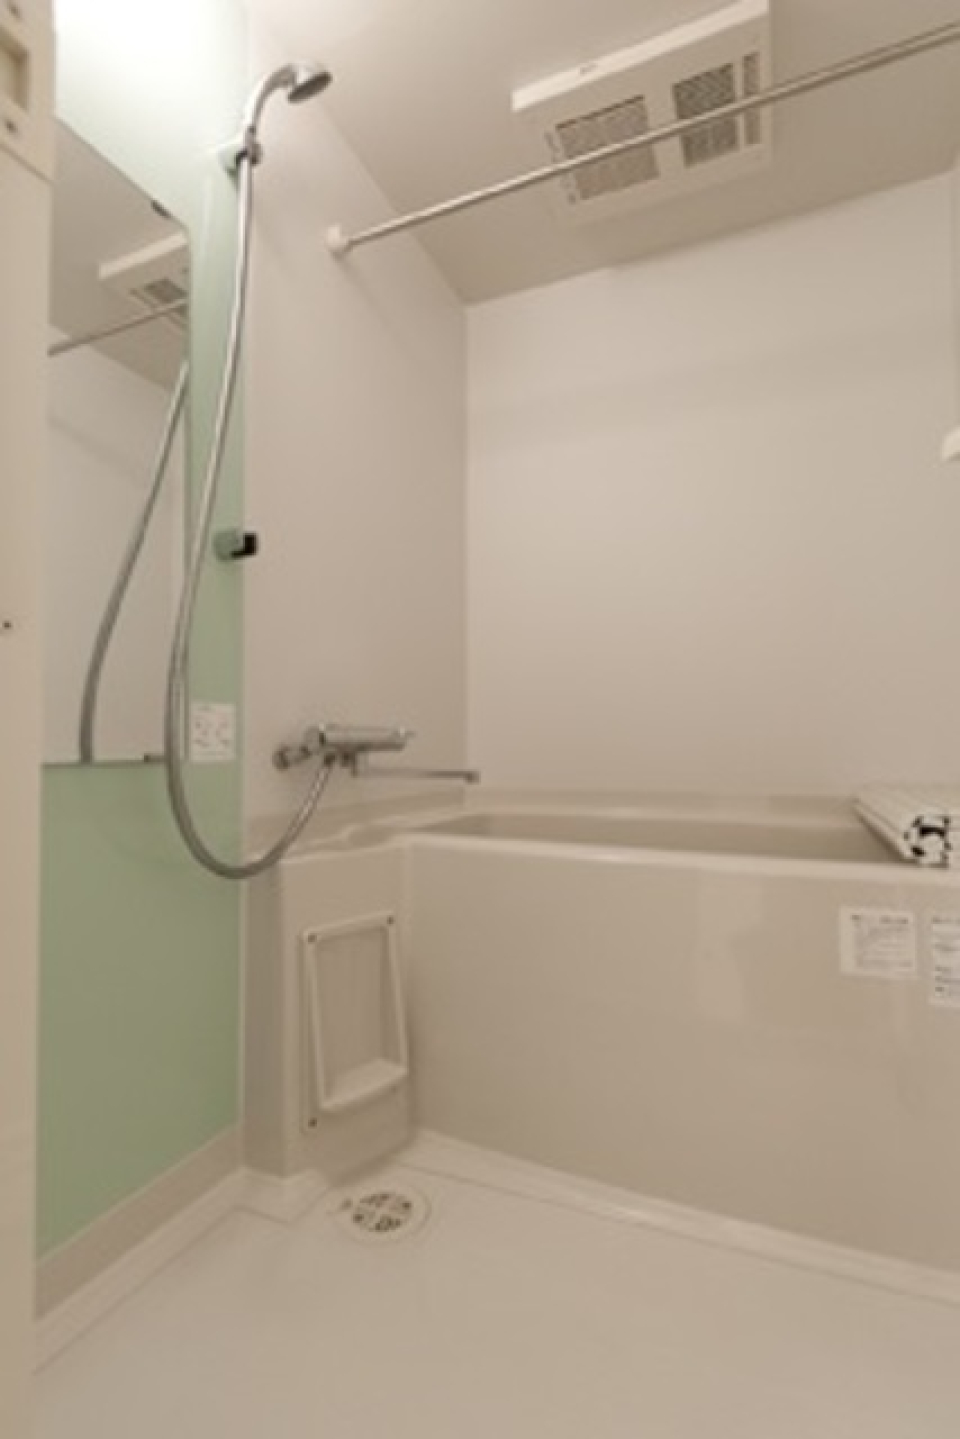 ライトブルーのパネルが導入された浴室です。※写真は同タイプ住戸です。